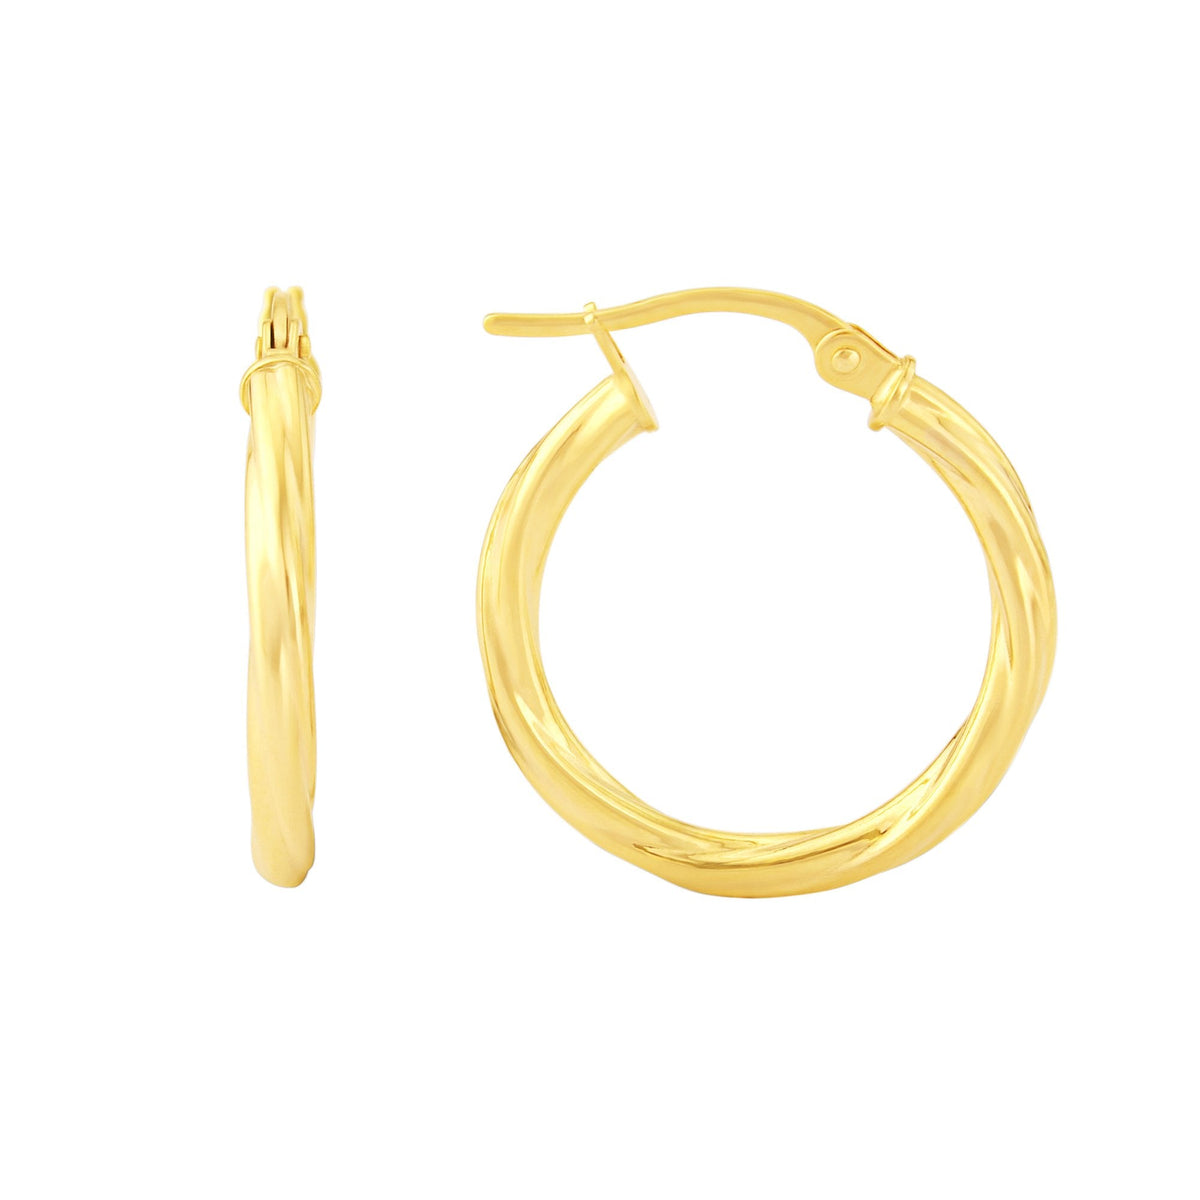 9ct gold 15mm twisted hoop earrings